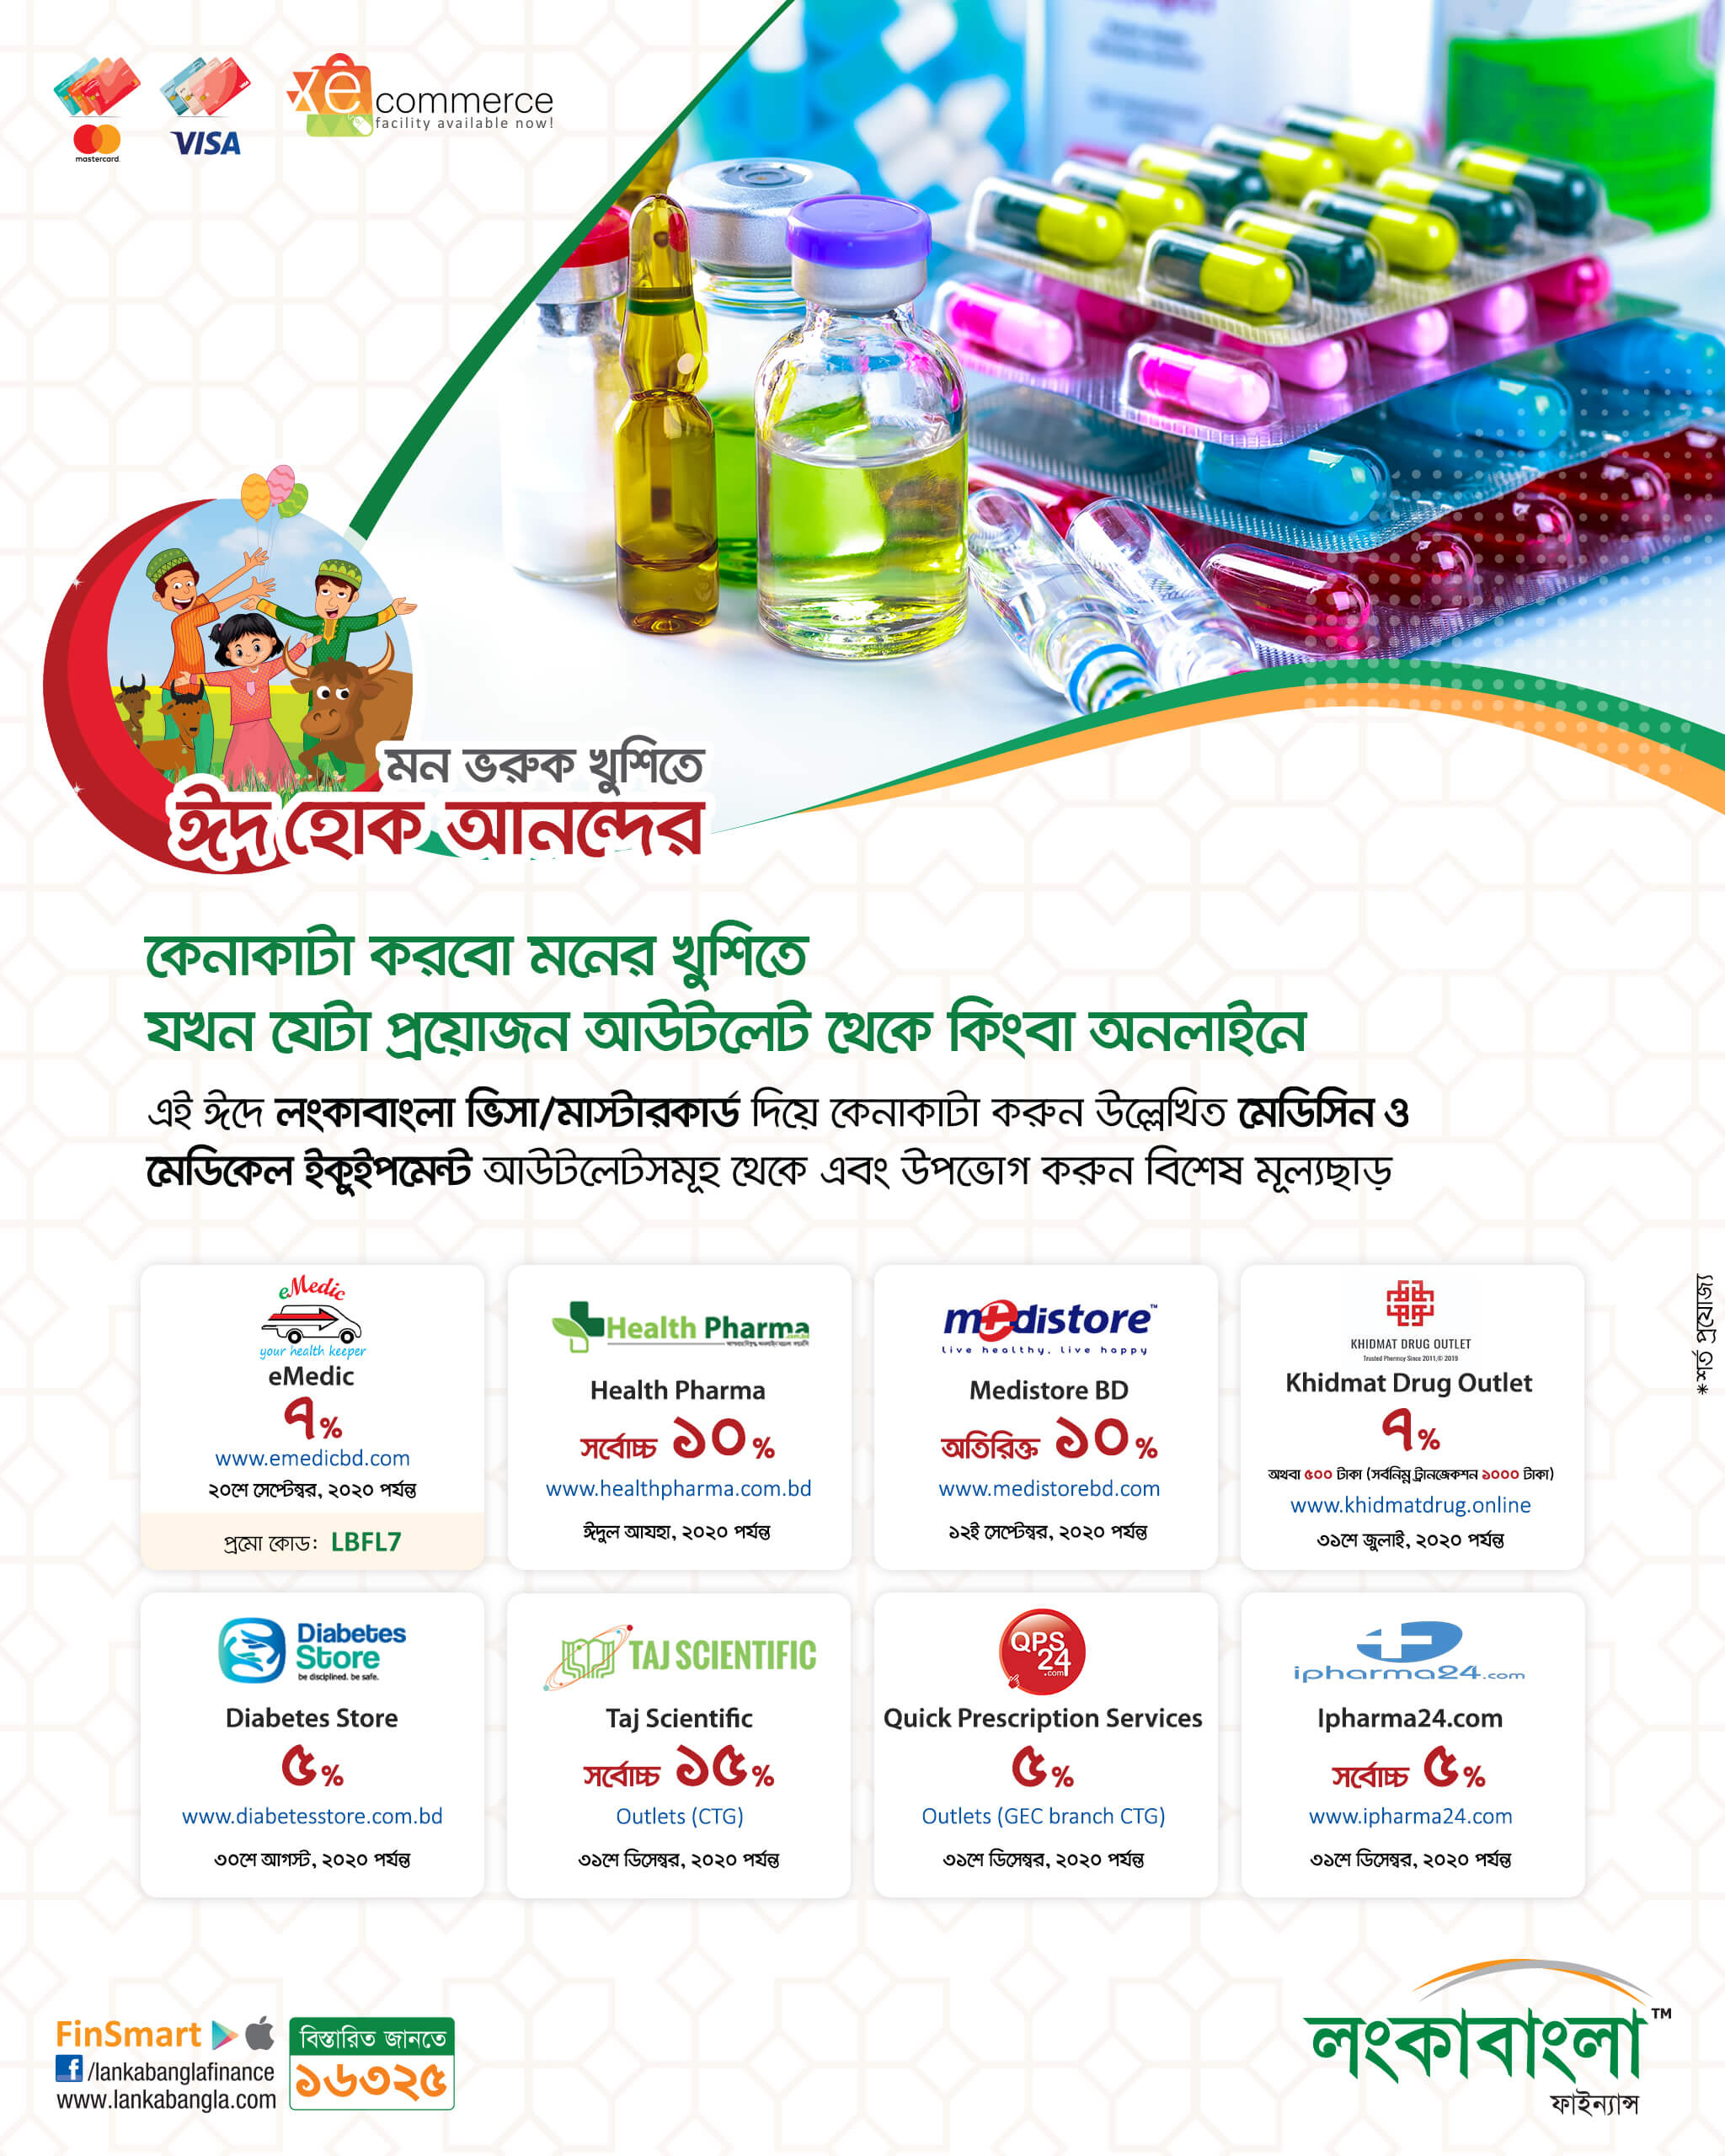 Eid Ul Adha Medicine & Medical Equipment offer